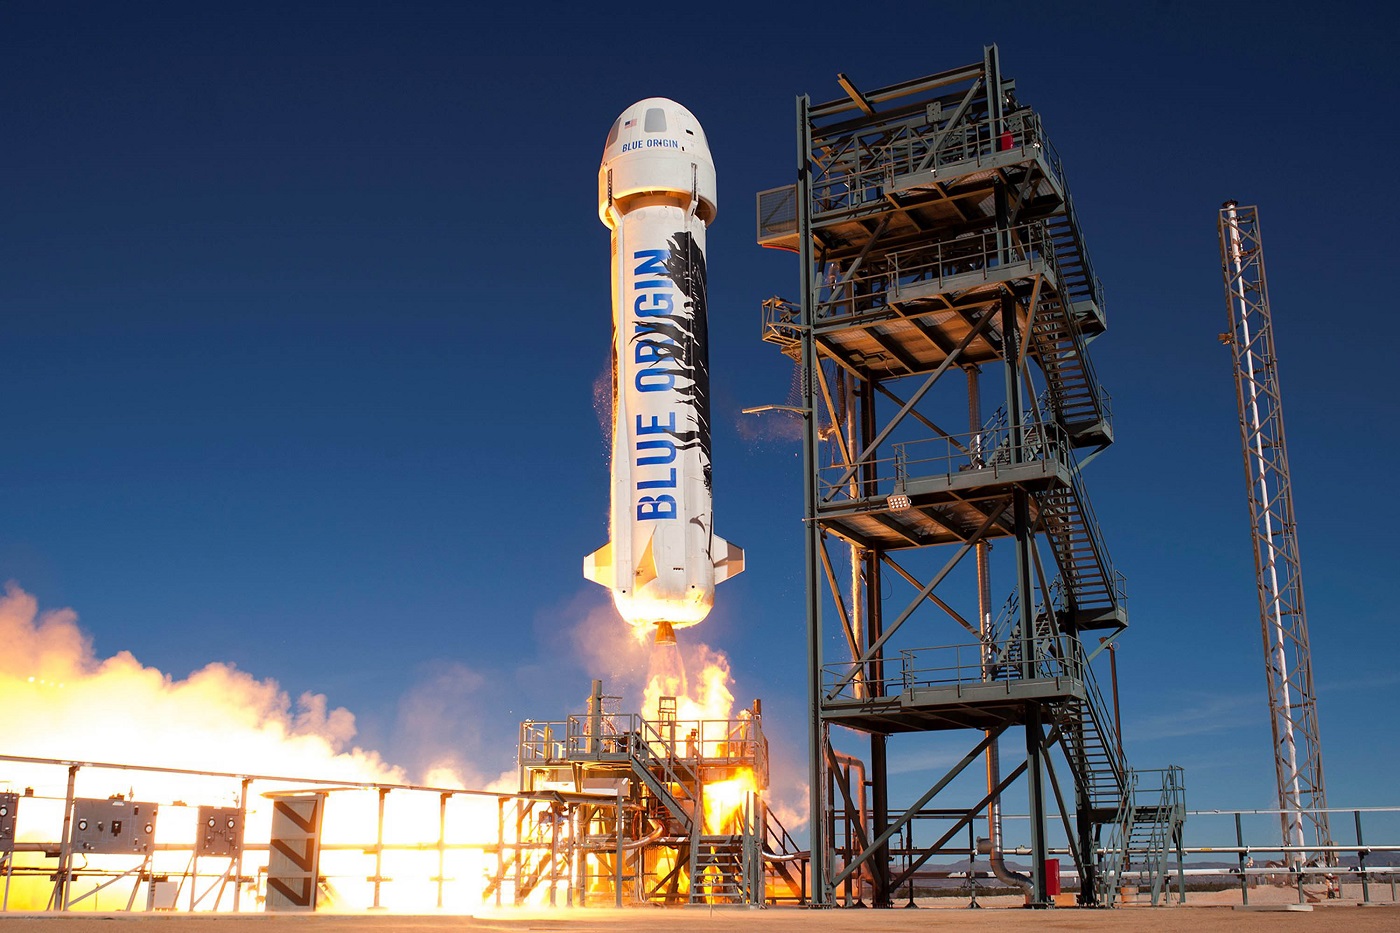 Jeff Bezos deve ficar no espaço, pedem milhares em petição